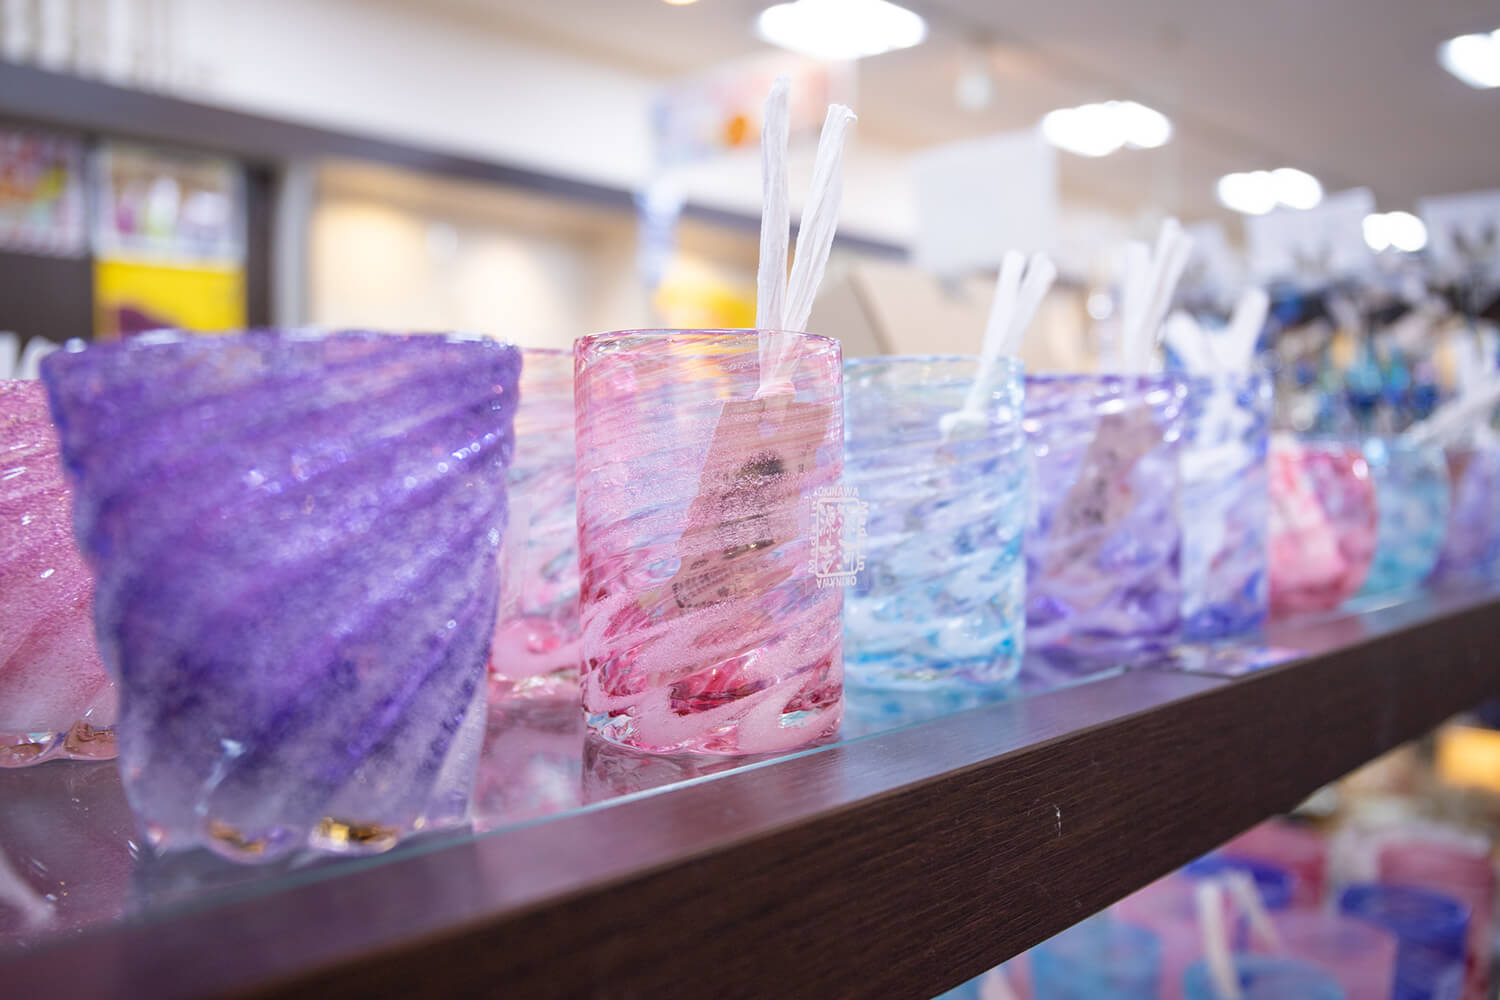 読谷村の作家が手掛けた琉球ガラスややちむんが種類豊富に並ぶ